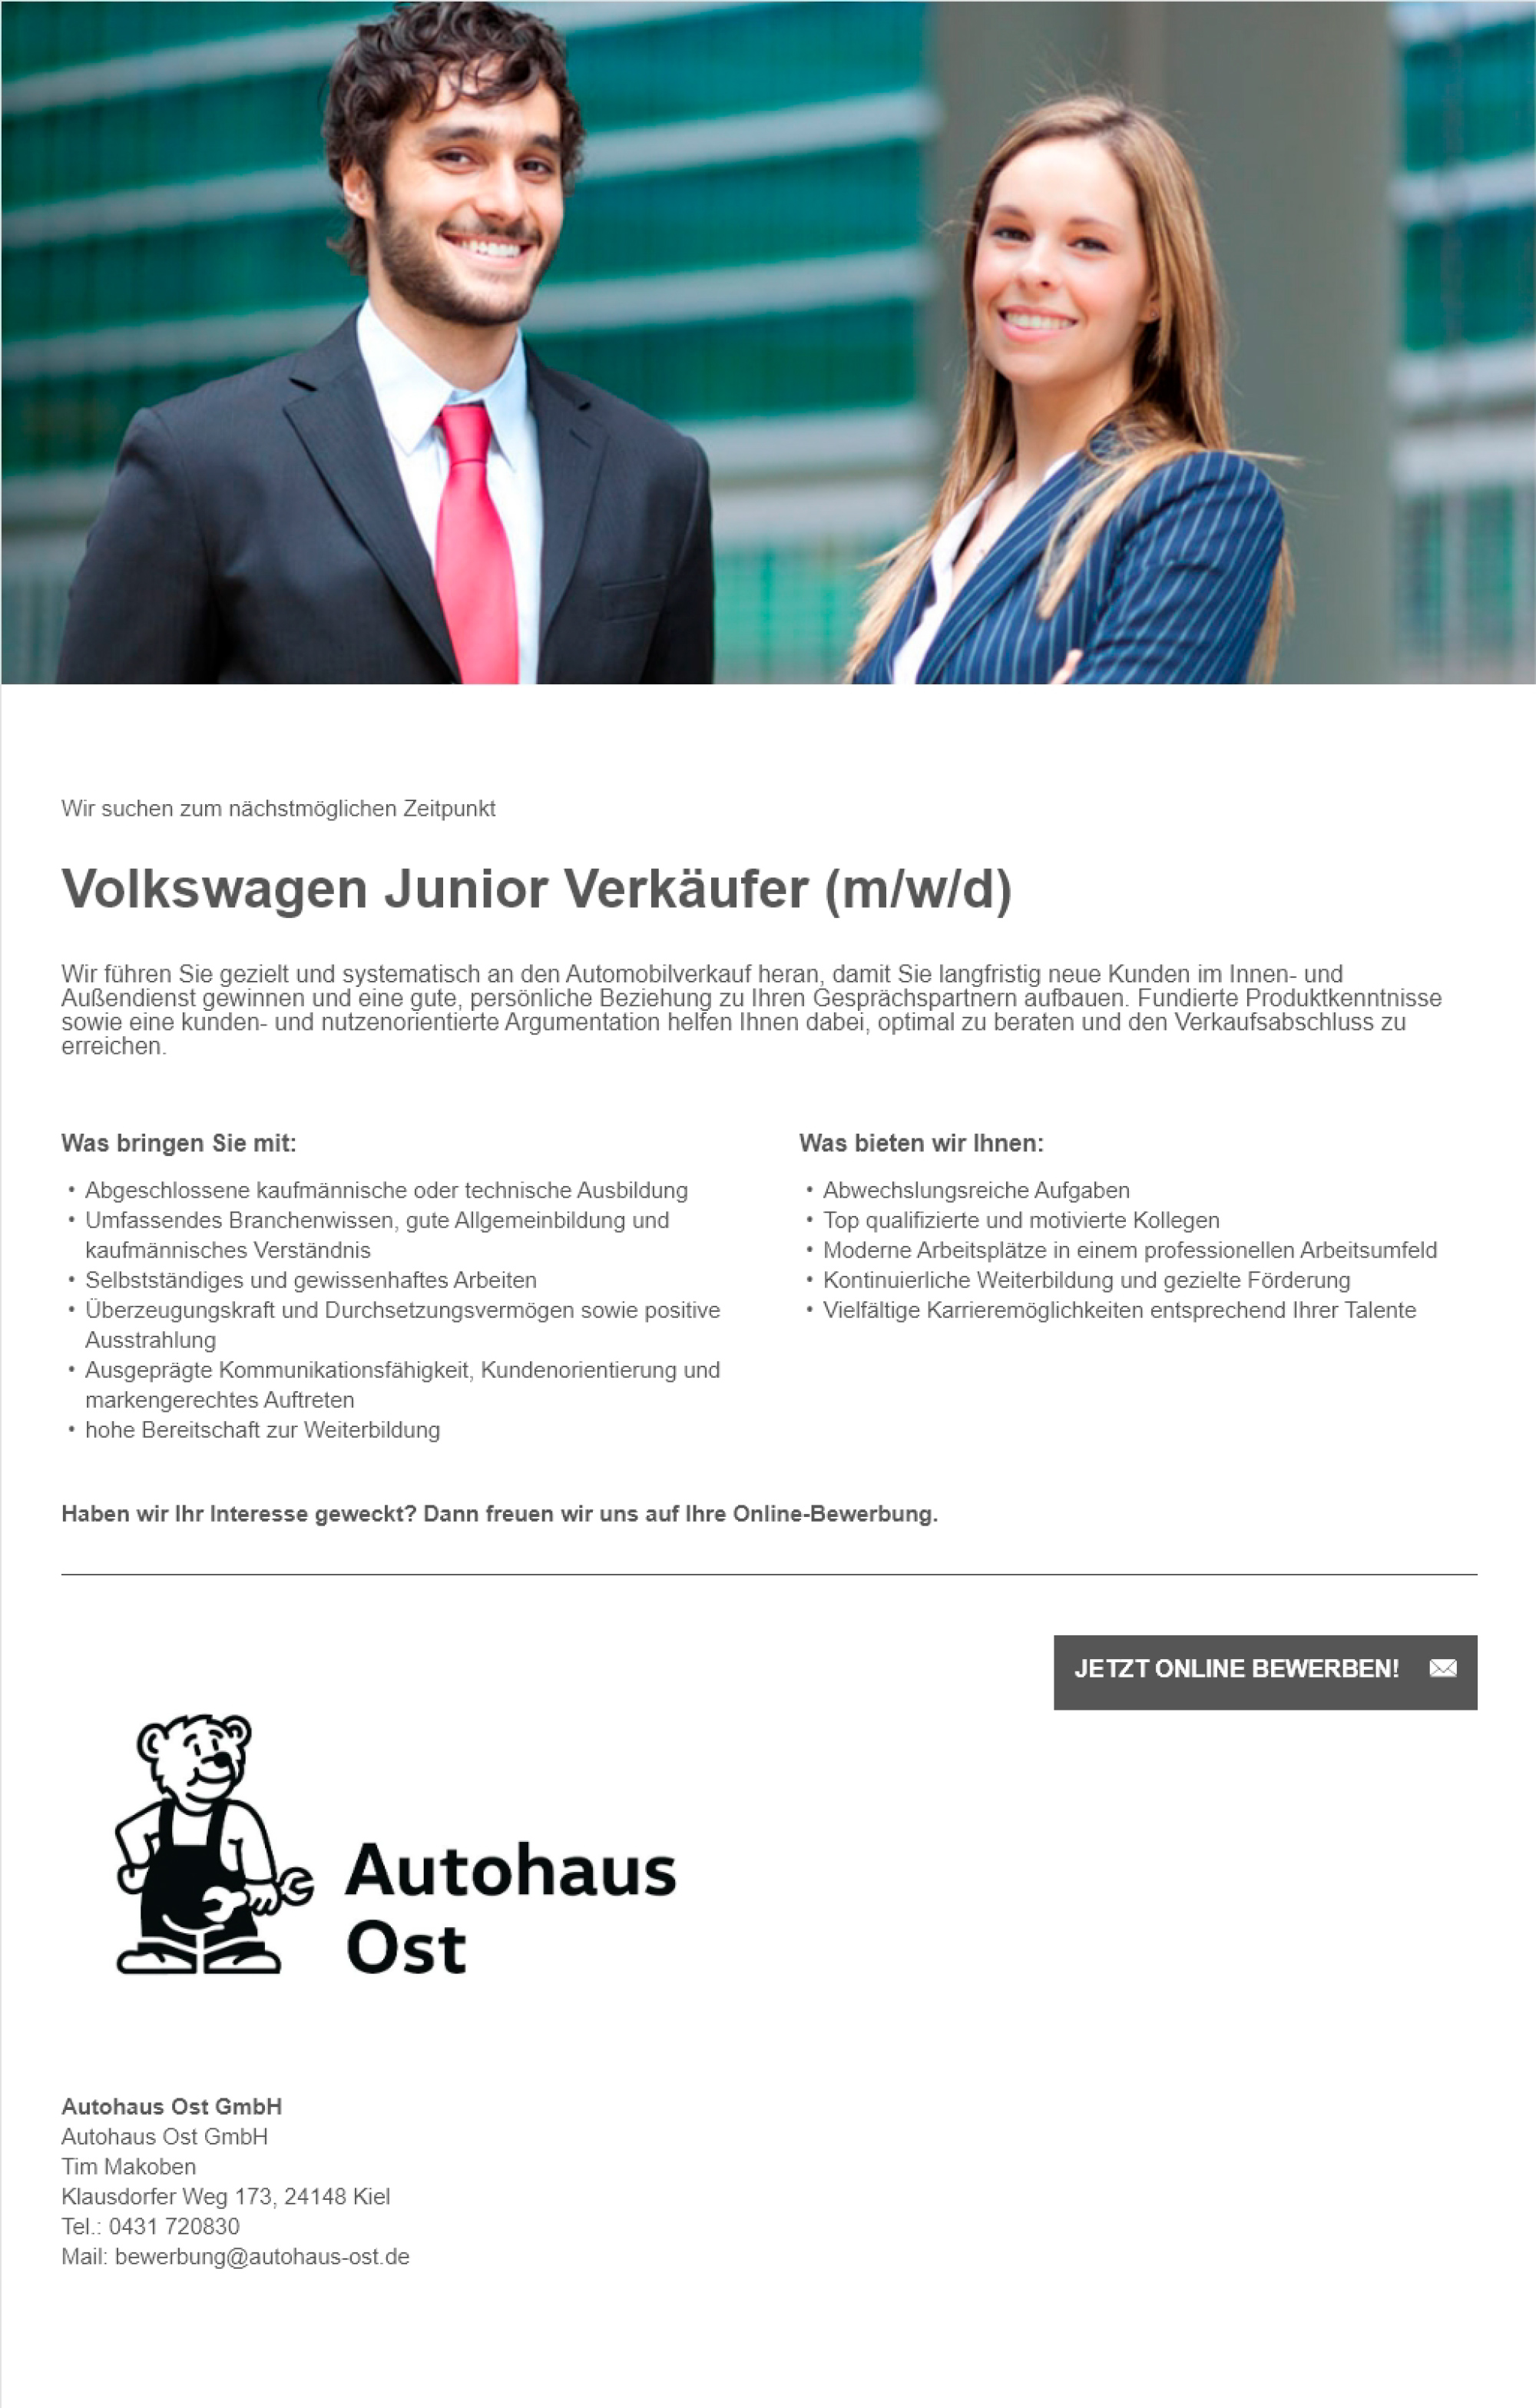 Volkswagen Juniorverkäufer in Kiel gesucht